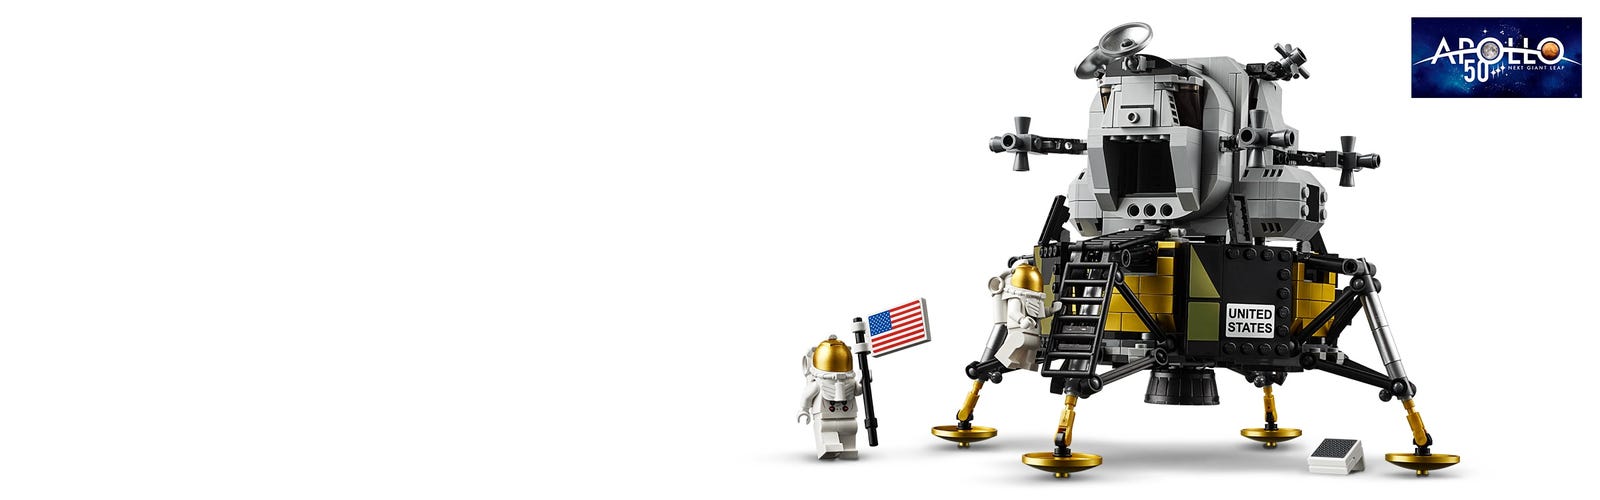 Vitrine en Acrylique pour Module Lunaire Legos 10266 NASA Apollo